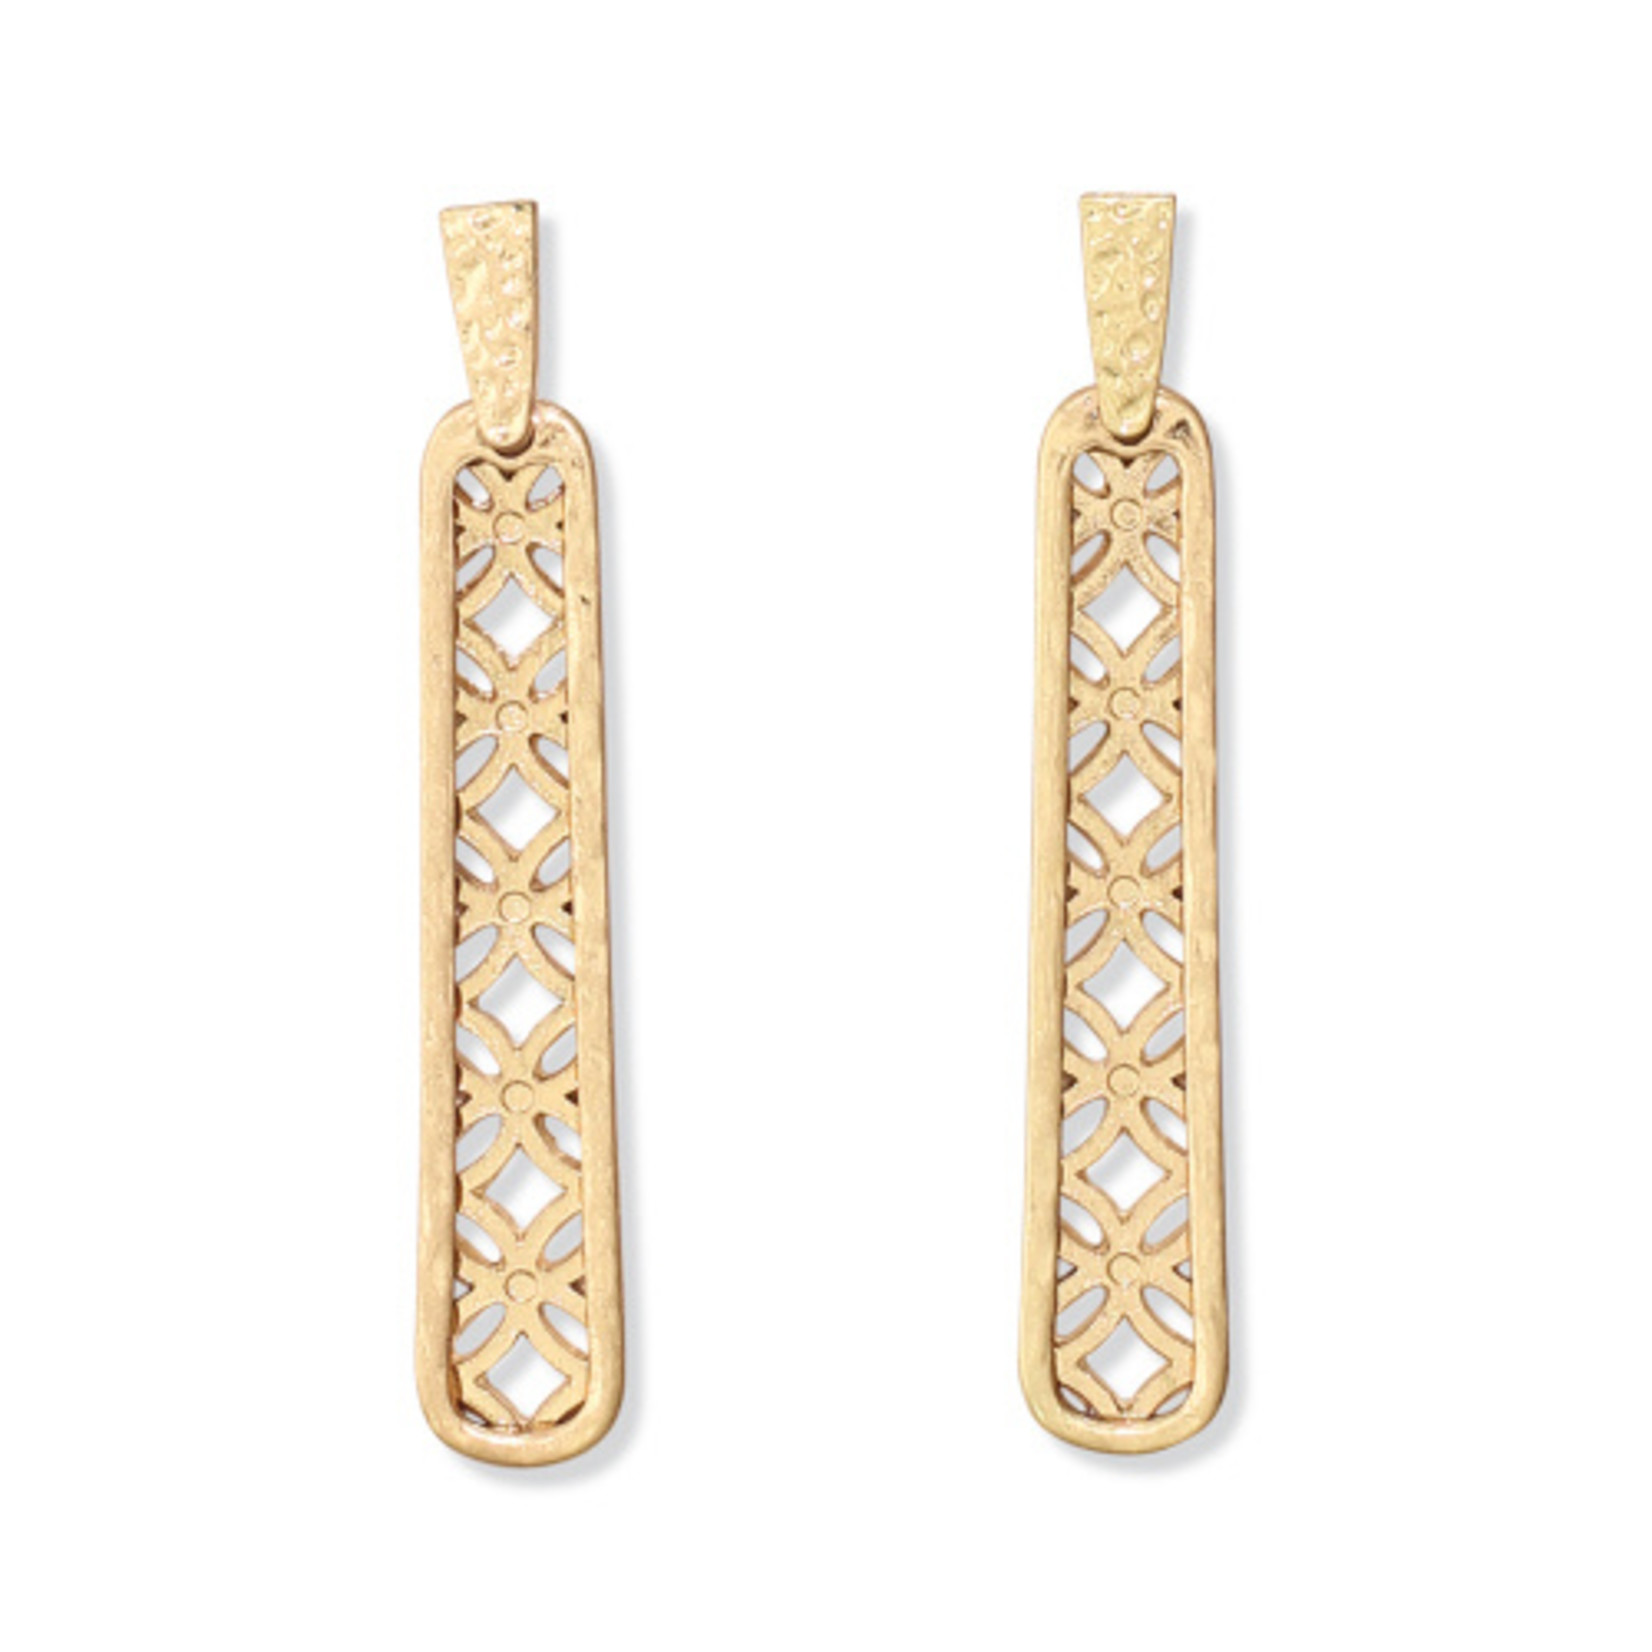 Periwinkle Periwinkle Earrings Gold geometric drops